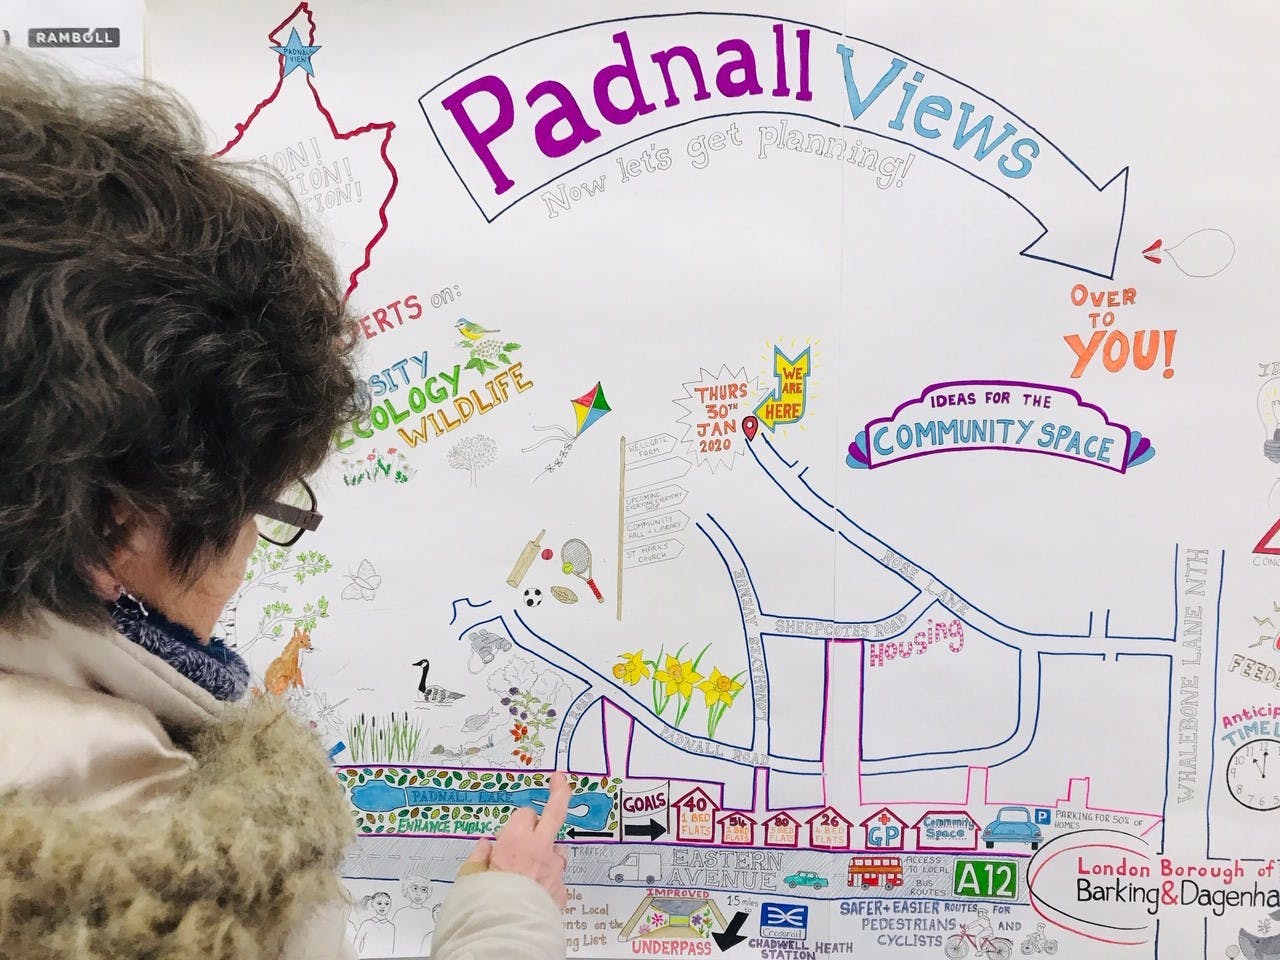 Drawing Up Plans At Padnall Views